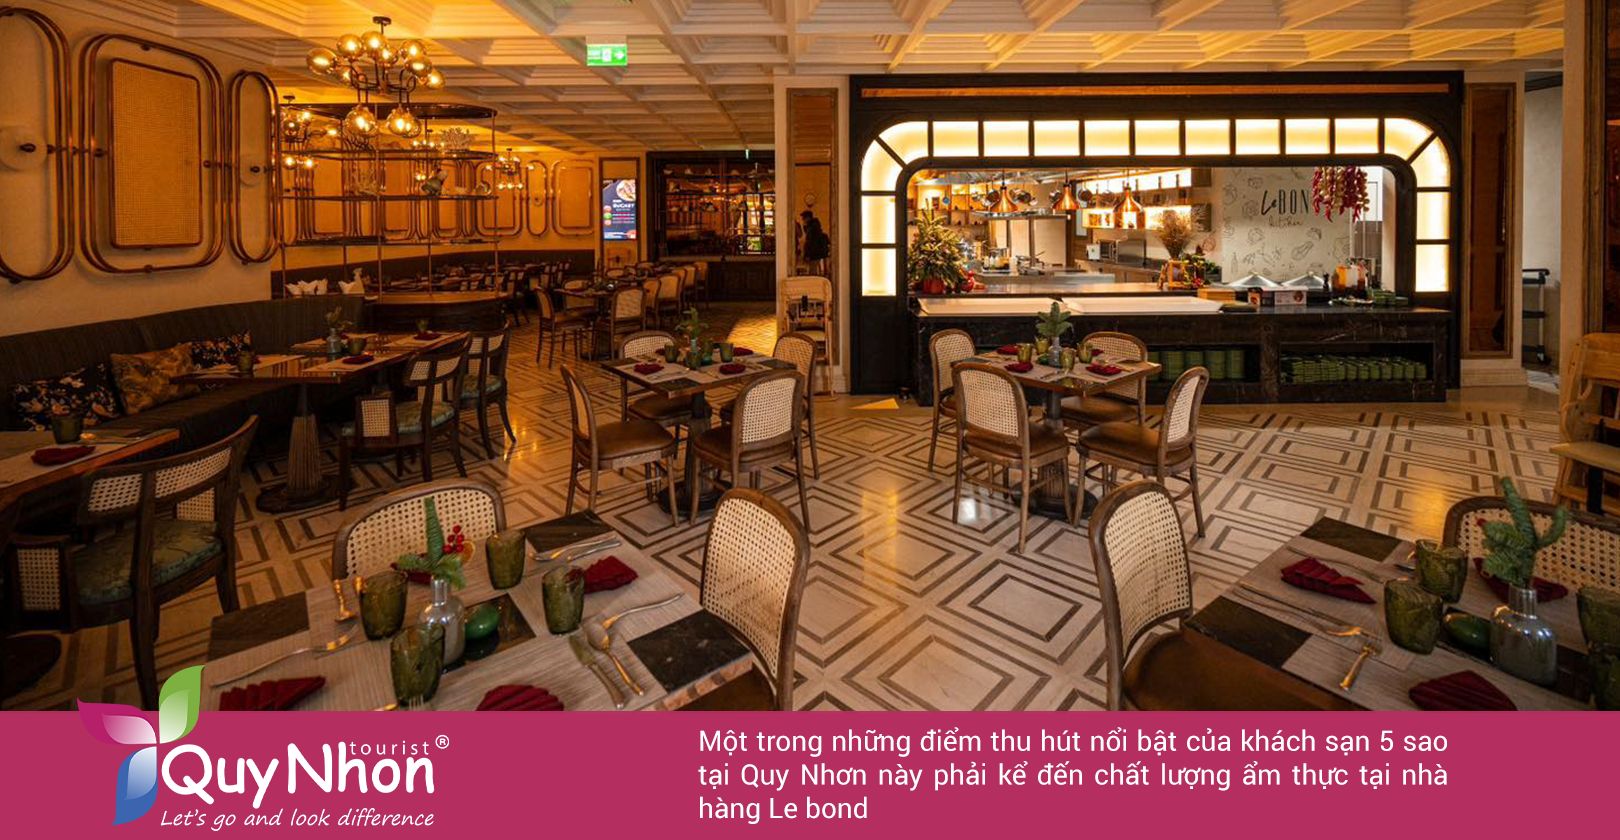 Điểm thu hút nổi bật của khách sạn 5 sao tại Quy Nhơn này phải kể đến chất lượng ẩm thực tại nhà hàng Le bond.